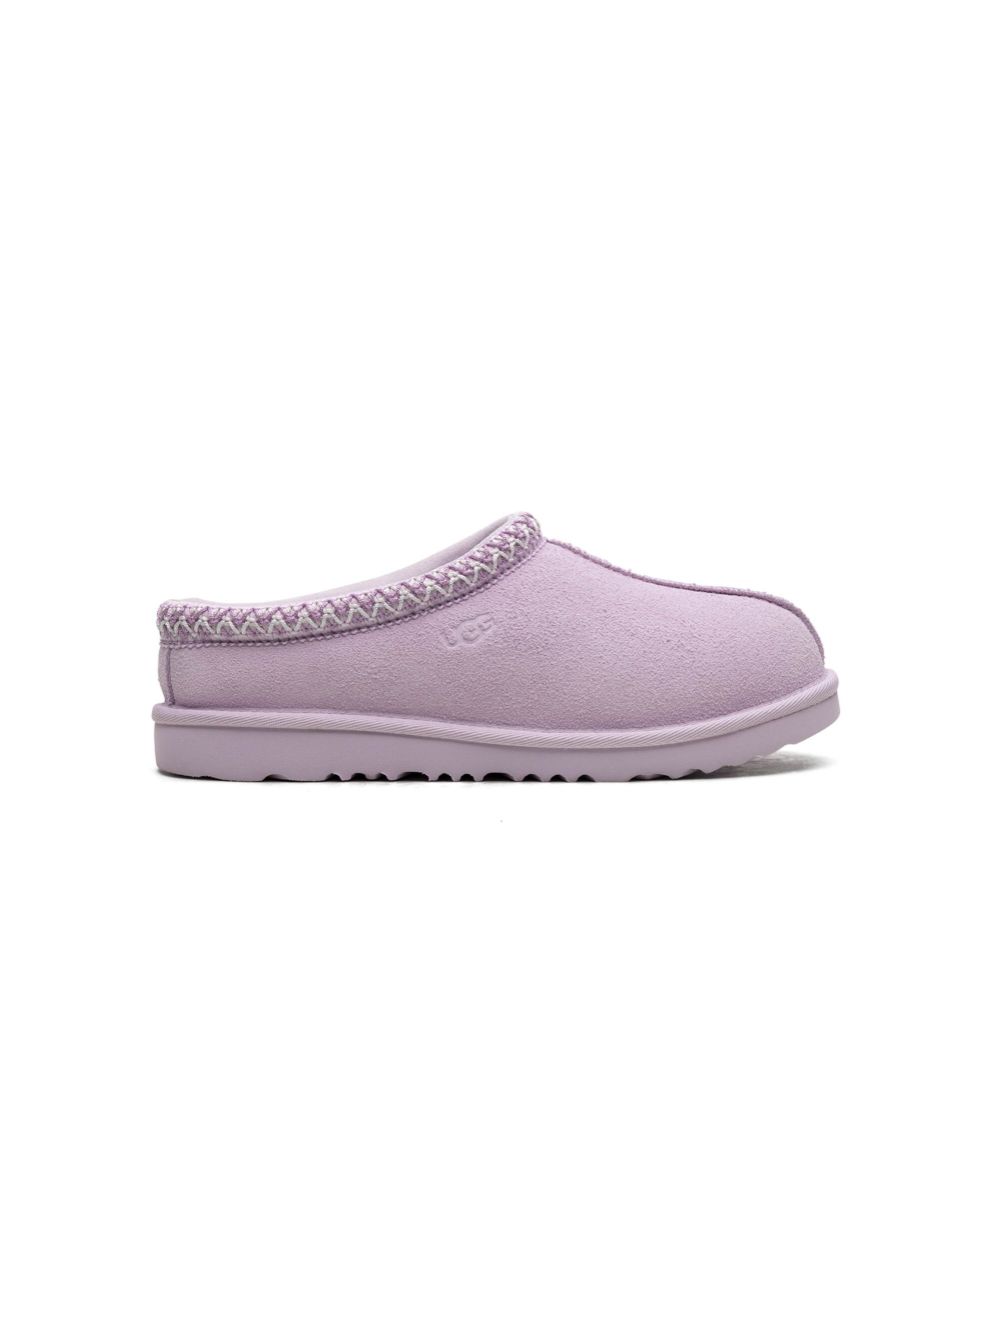 UGG Kids Tasman II "Lavender" suede slippers Pink